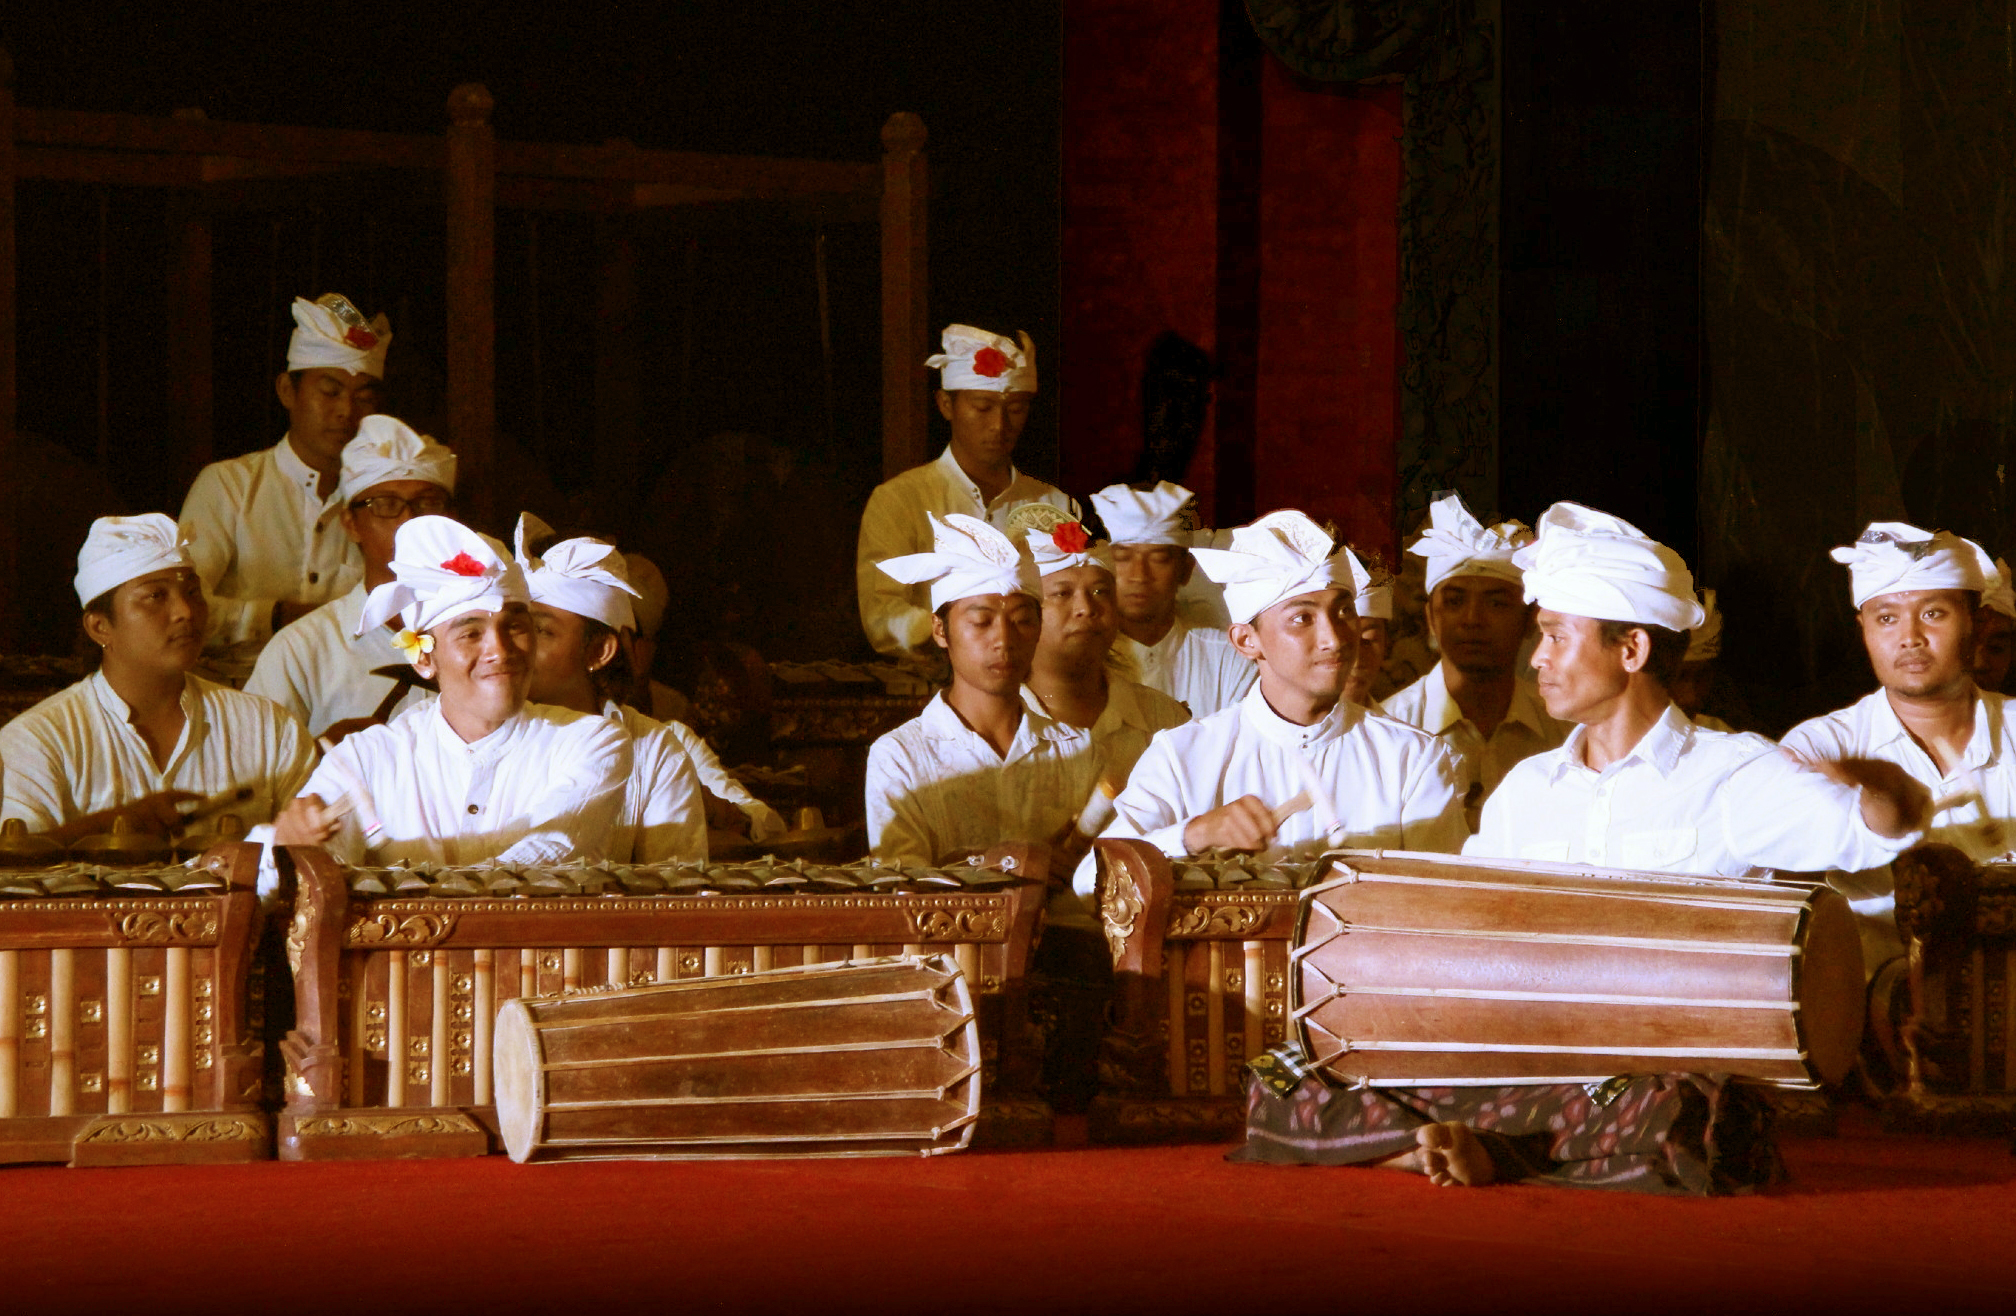 Gamelan gong kebyar lahir pada awal abad ke 20 1915 yang merupakan musik gamelan kontemporer new music kini telah menjadi musik tradisi